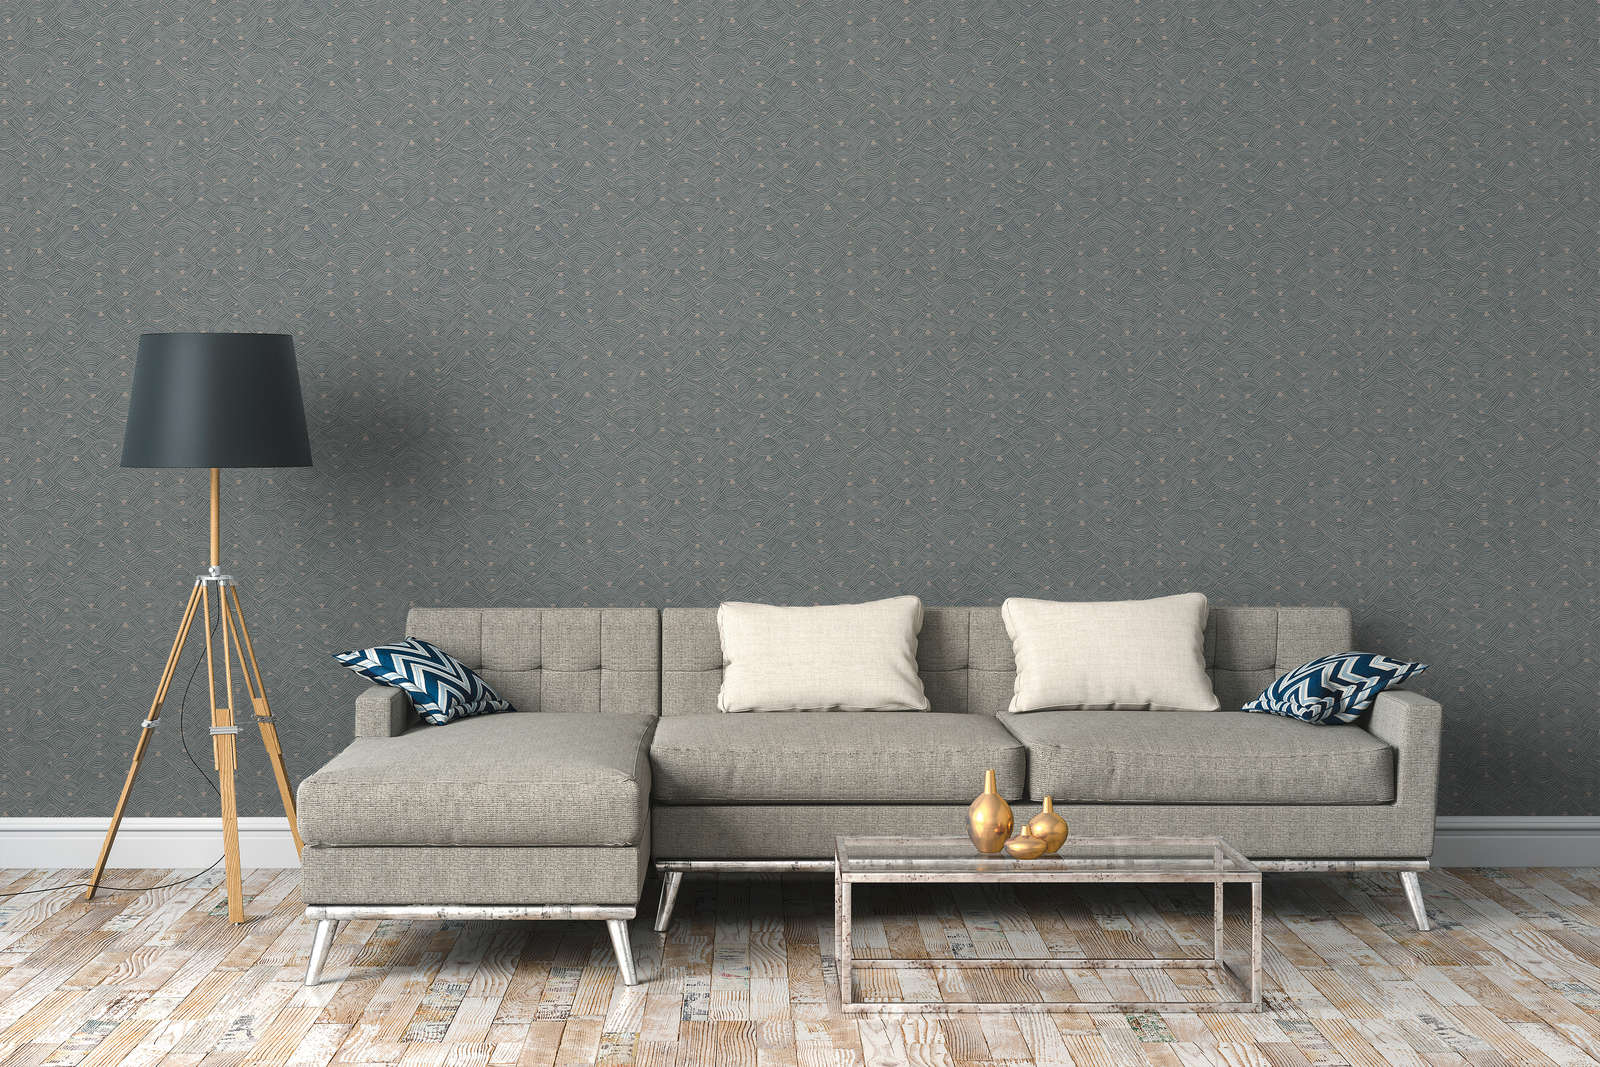             Vliesbehang ethno design met mand look - blauw, grijs, beige
        